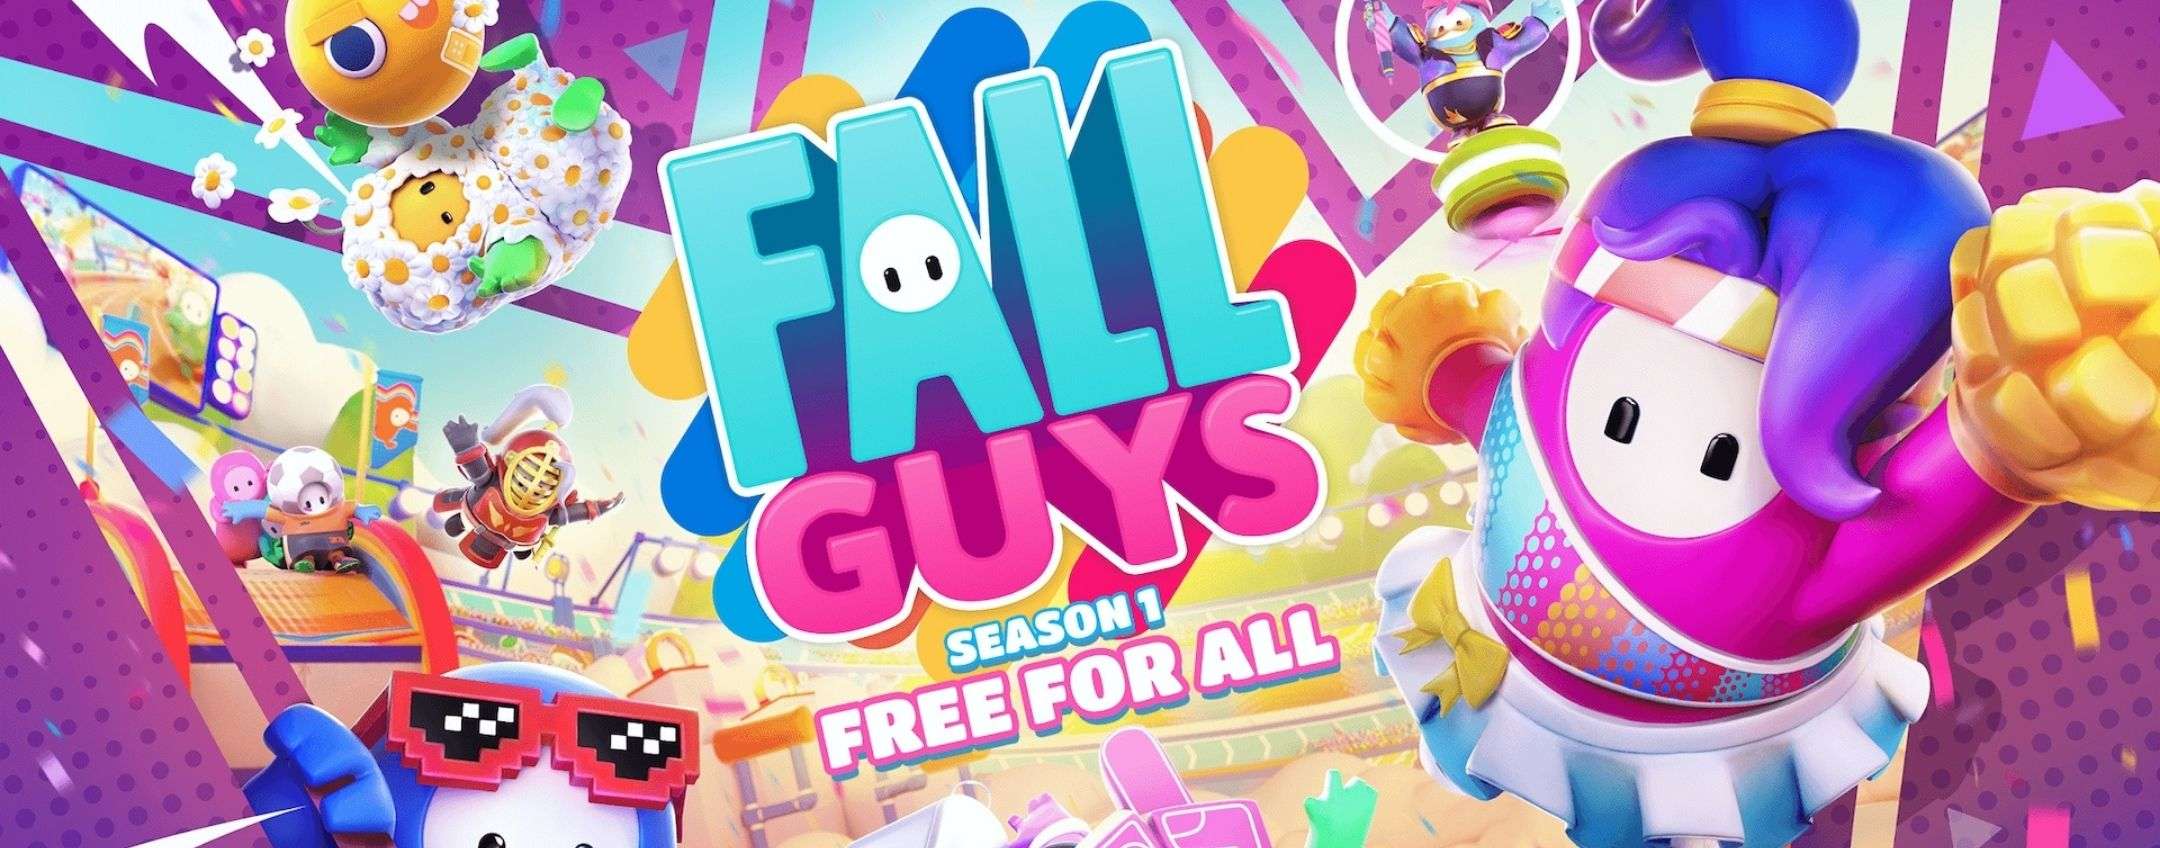 Fall Guys presto gratis e in arrivo anche su Switch, Xbox e PS5